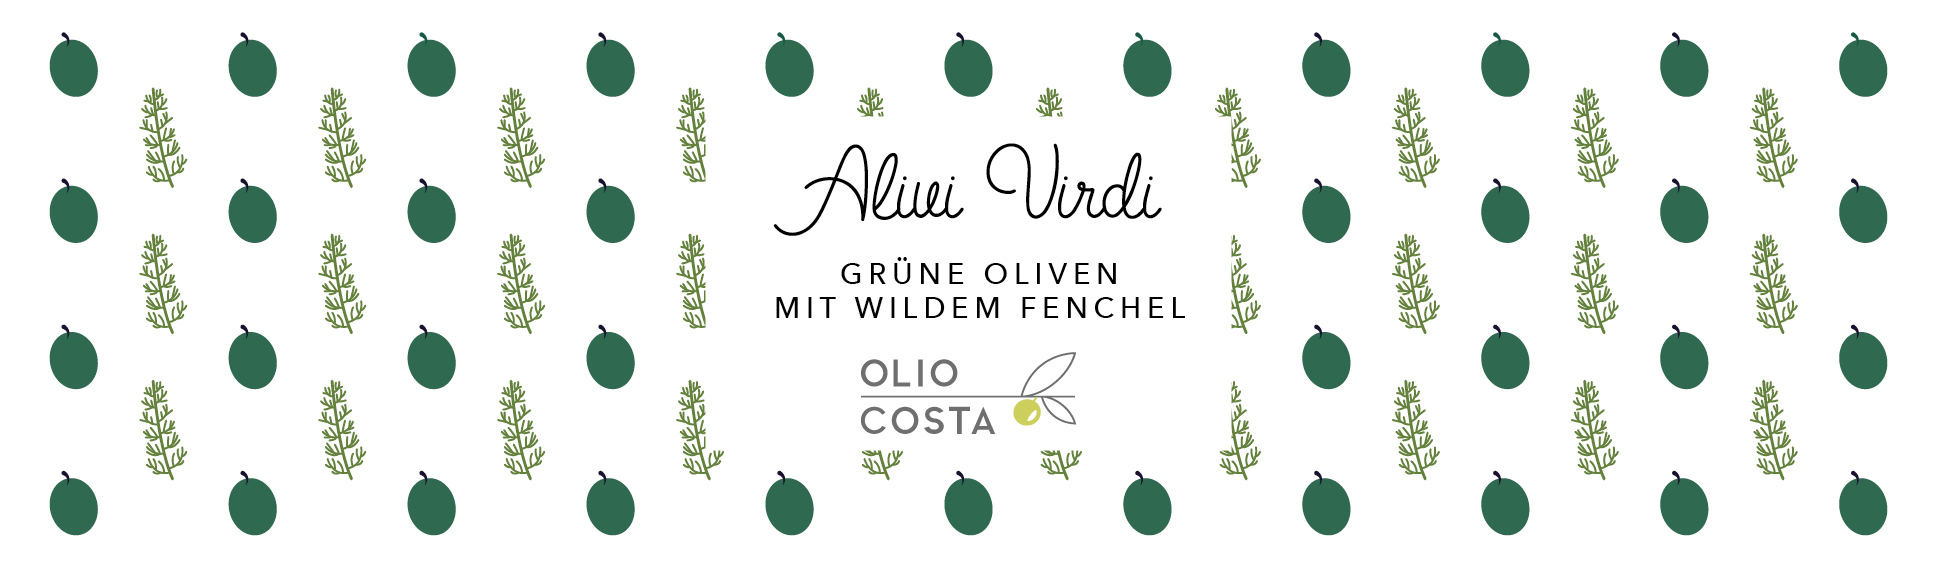 Gr%c3%bcne oliven alivi virdi von olio costa